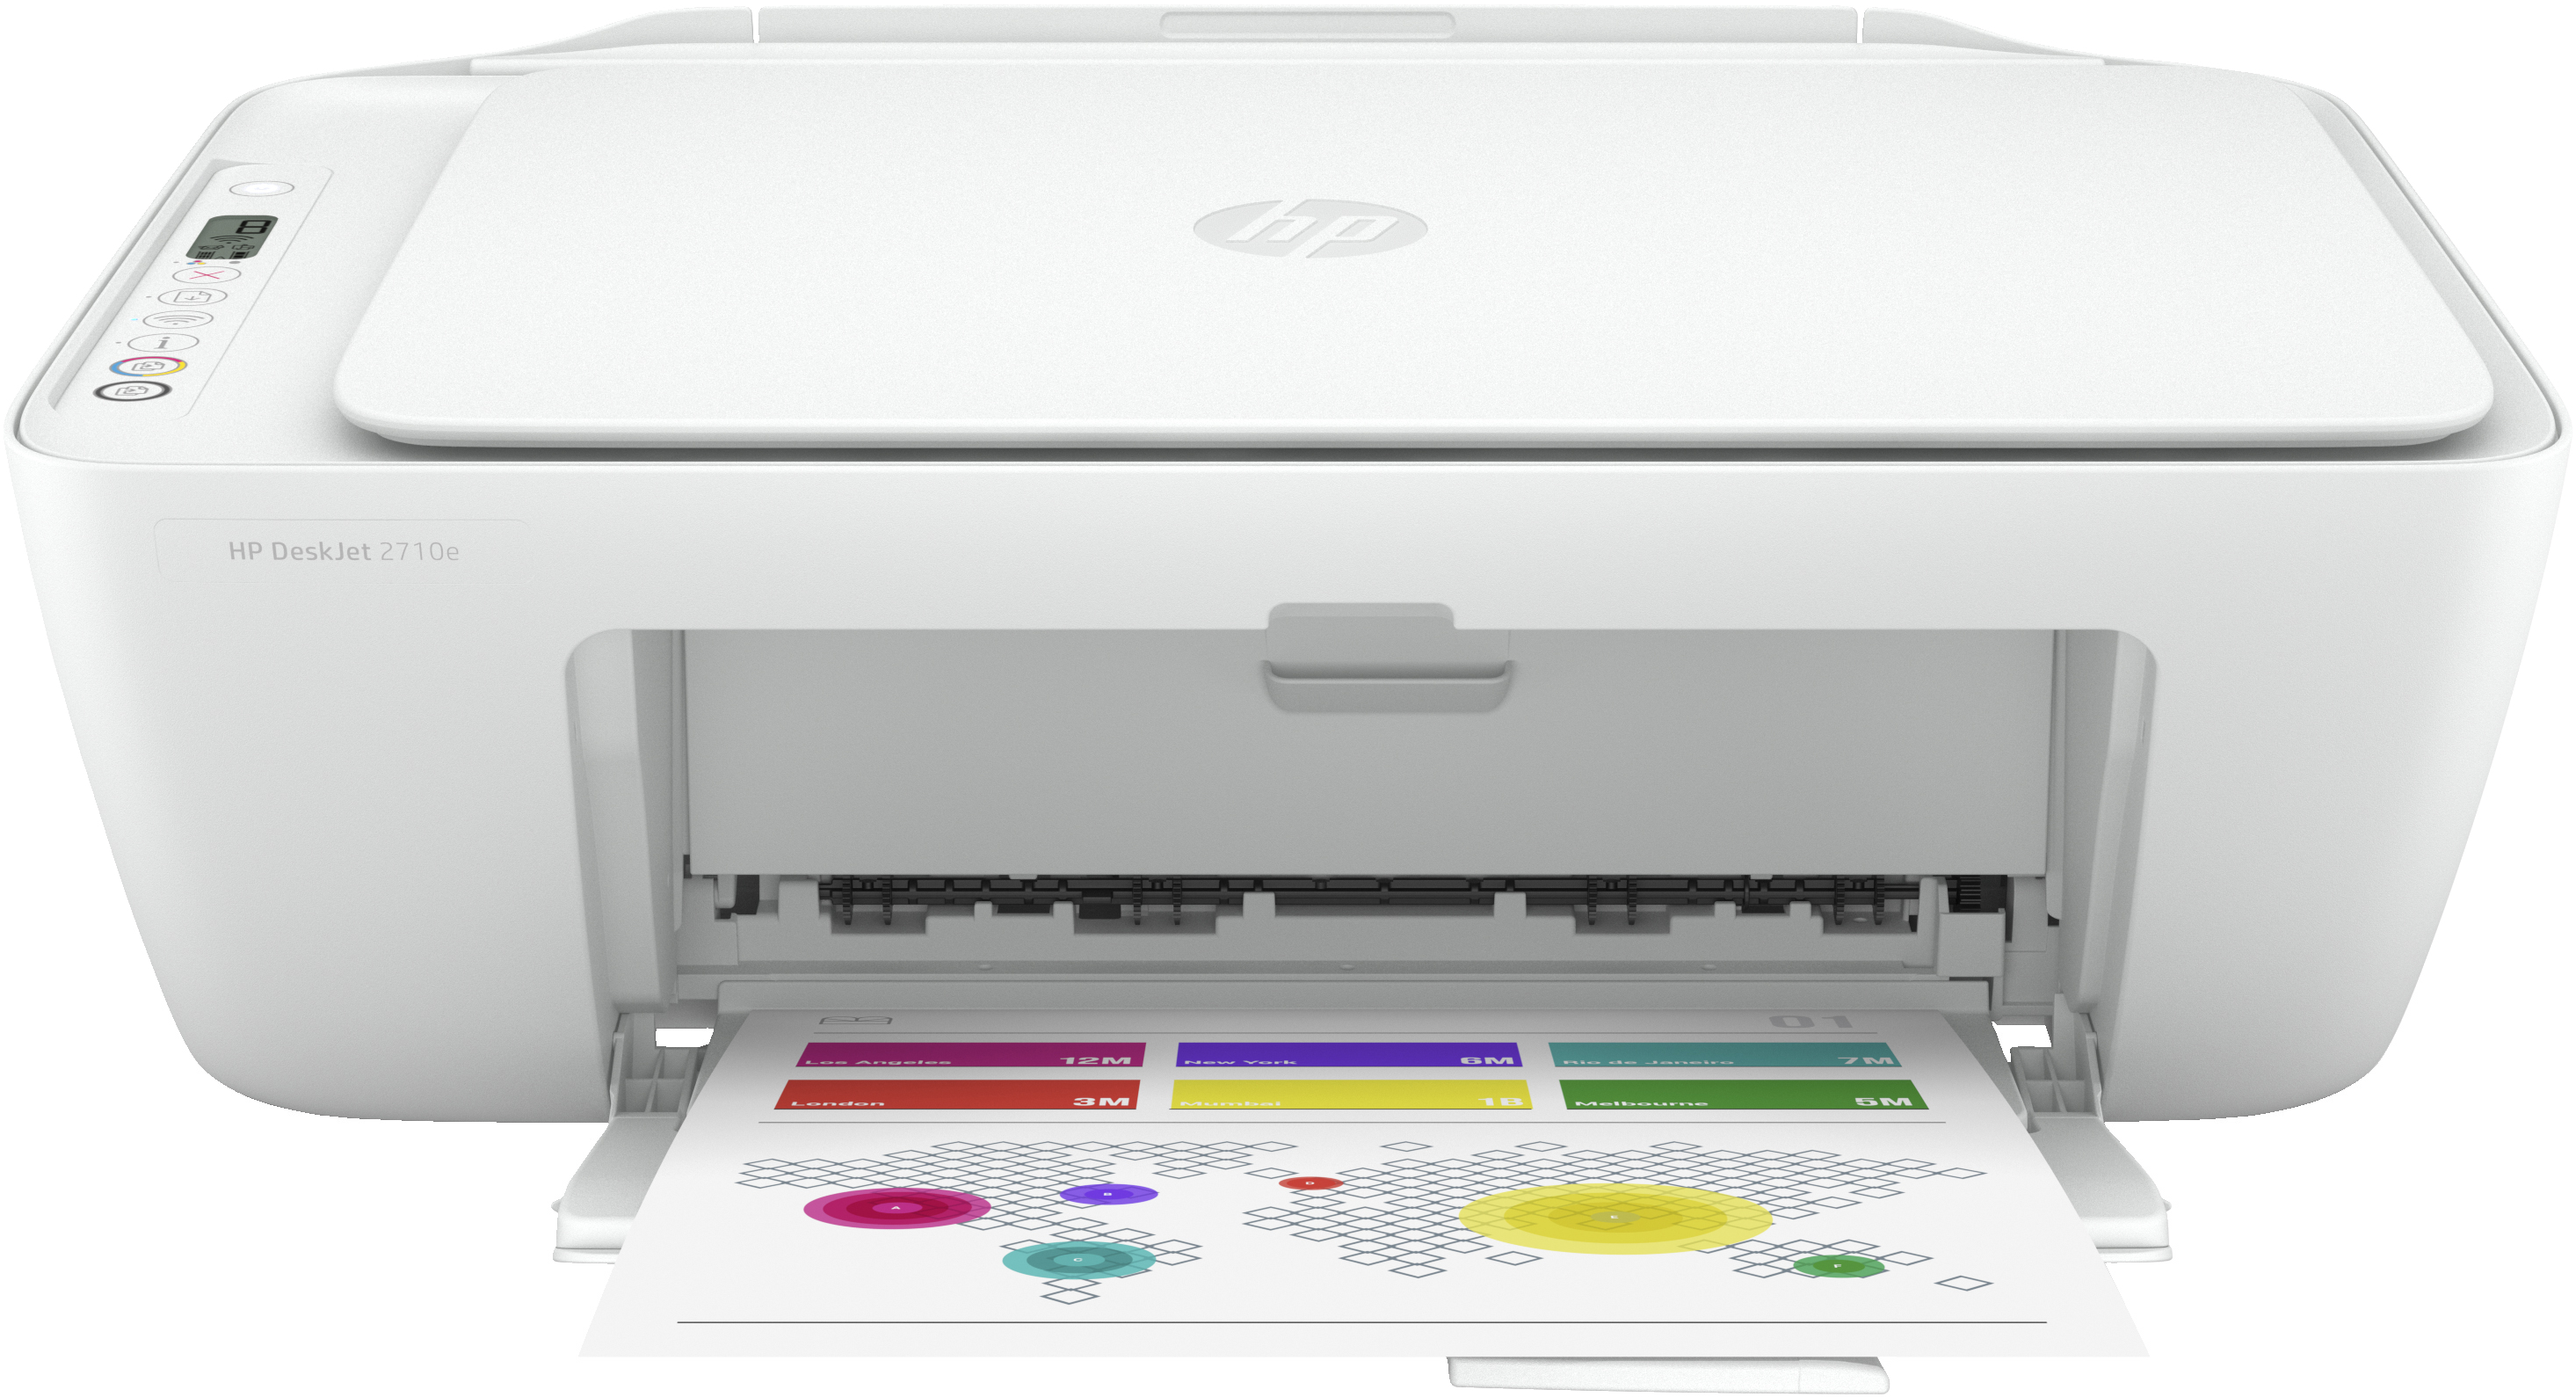 HP DeskJet Stampante multifunzione HP 2710e, Colore, Stampante per